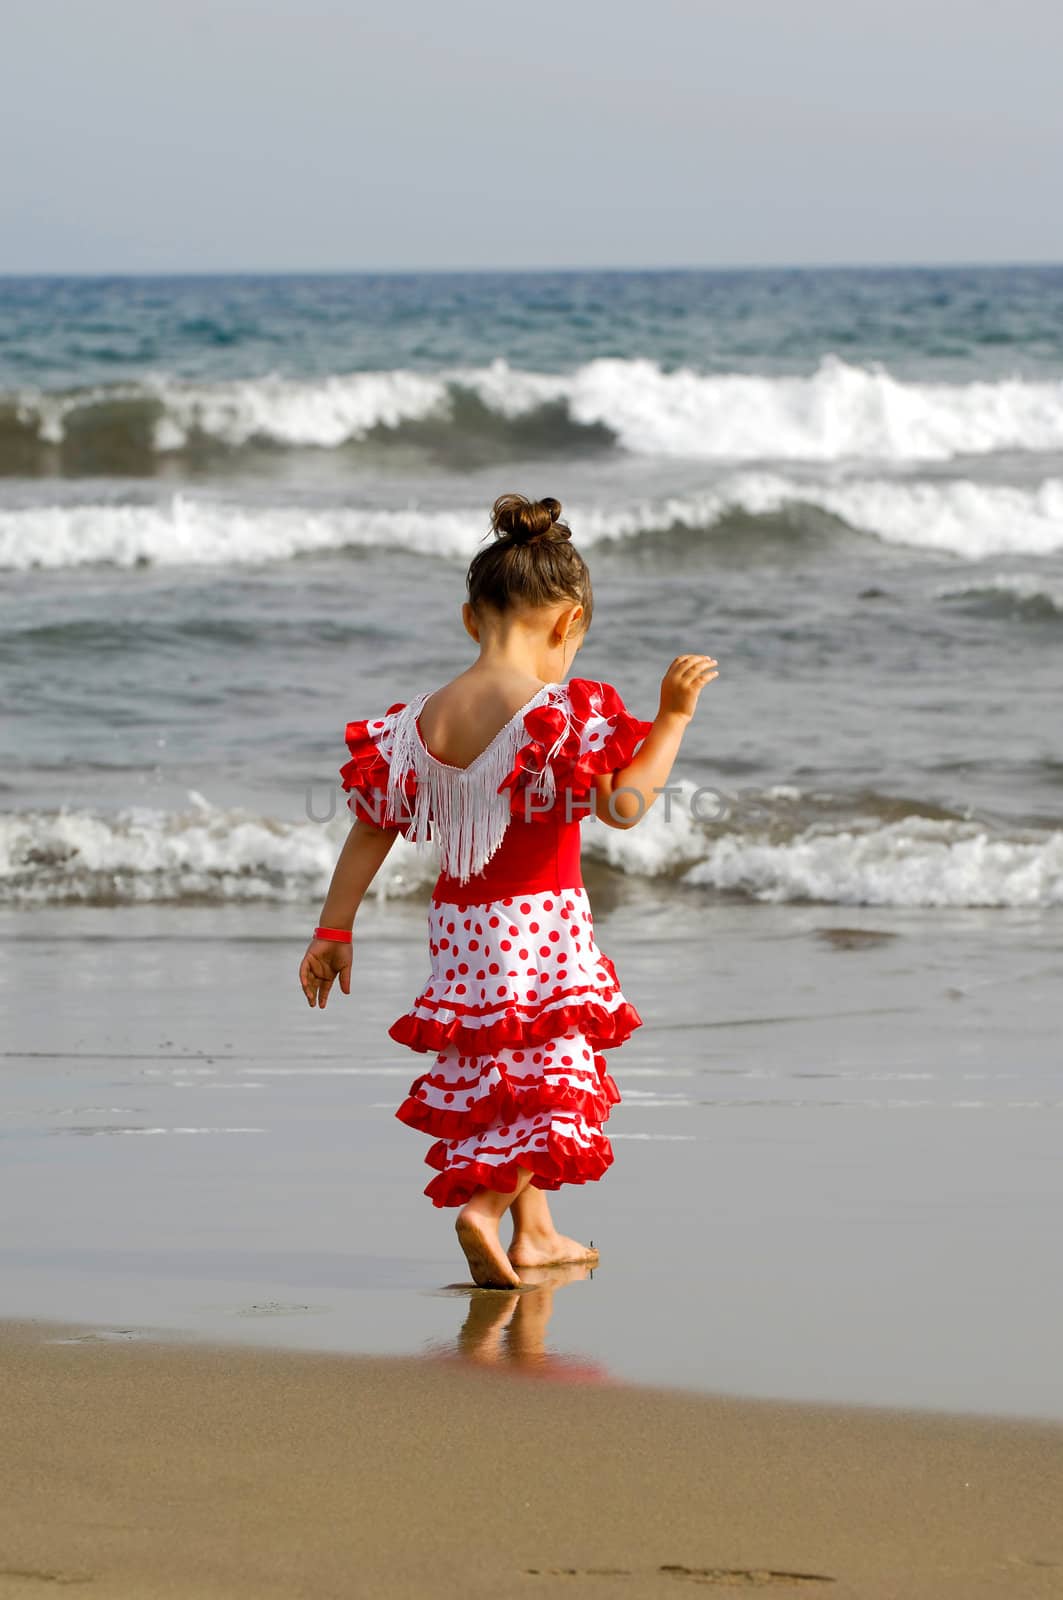 Child on beach by cfoto